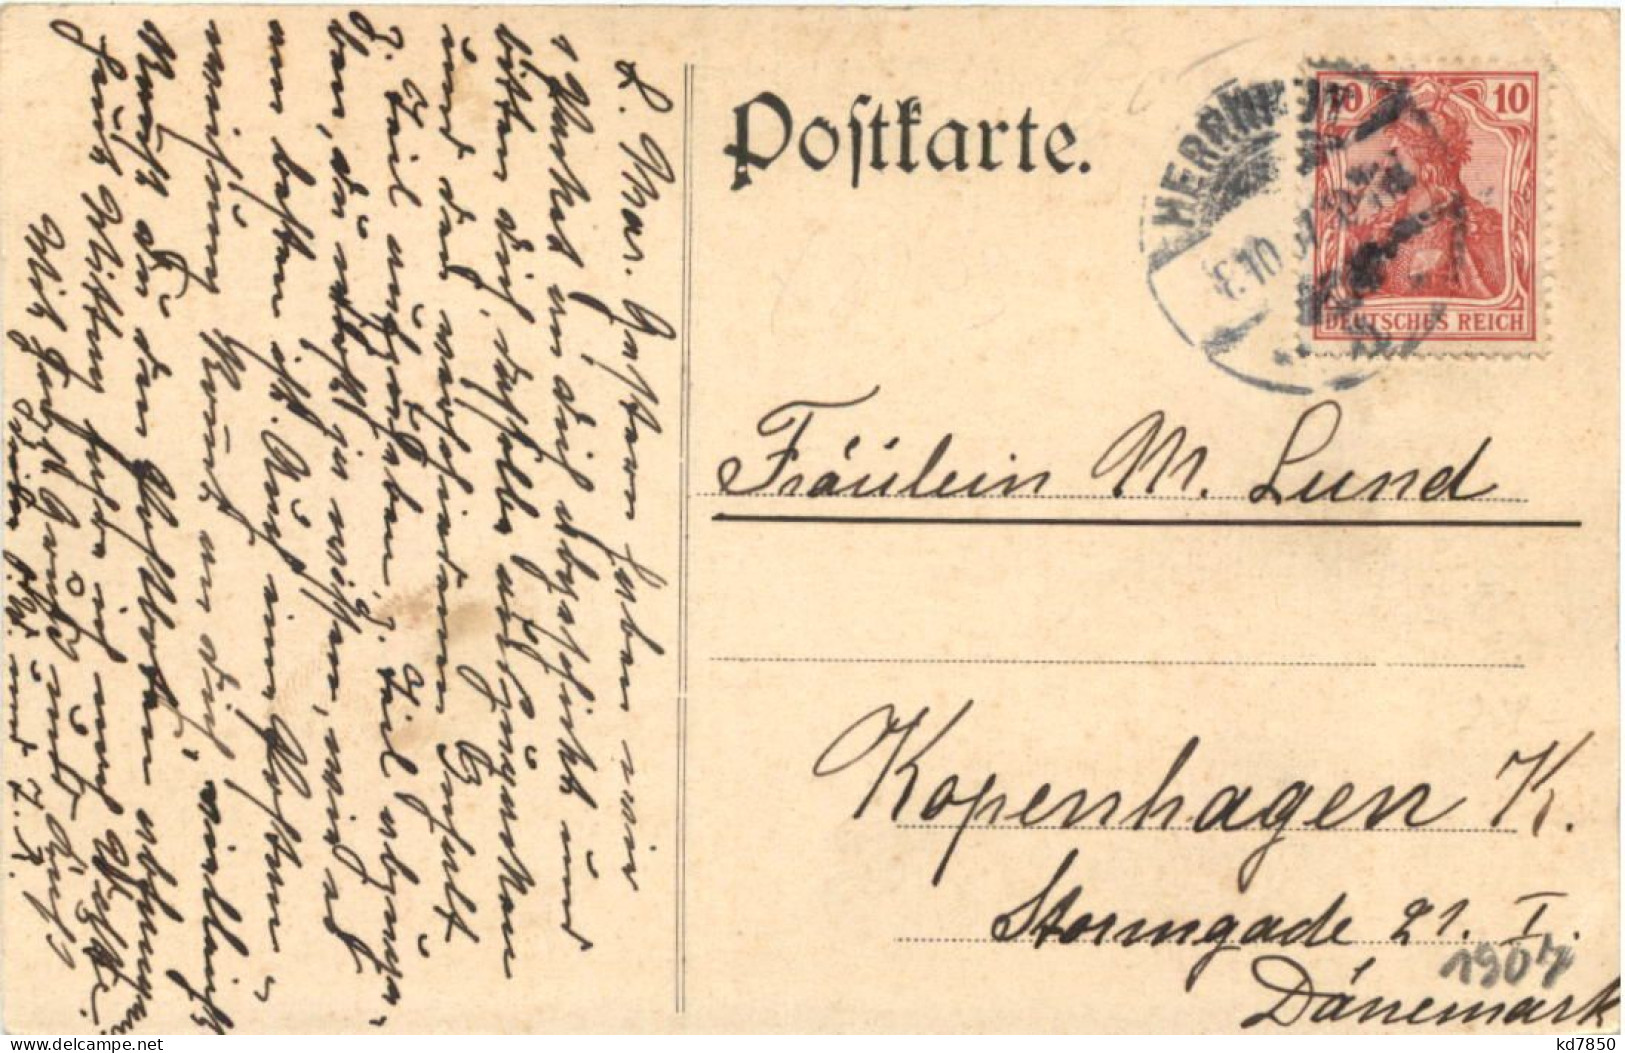 Herrnhut In Sachsen - Orgelweihe Und Saaljubel 1907 - Herrnhut